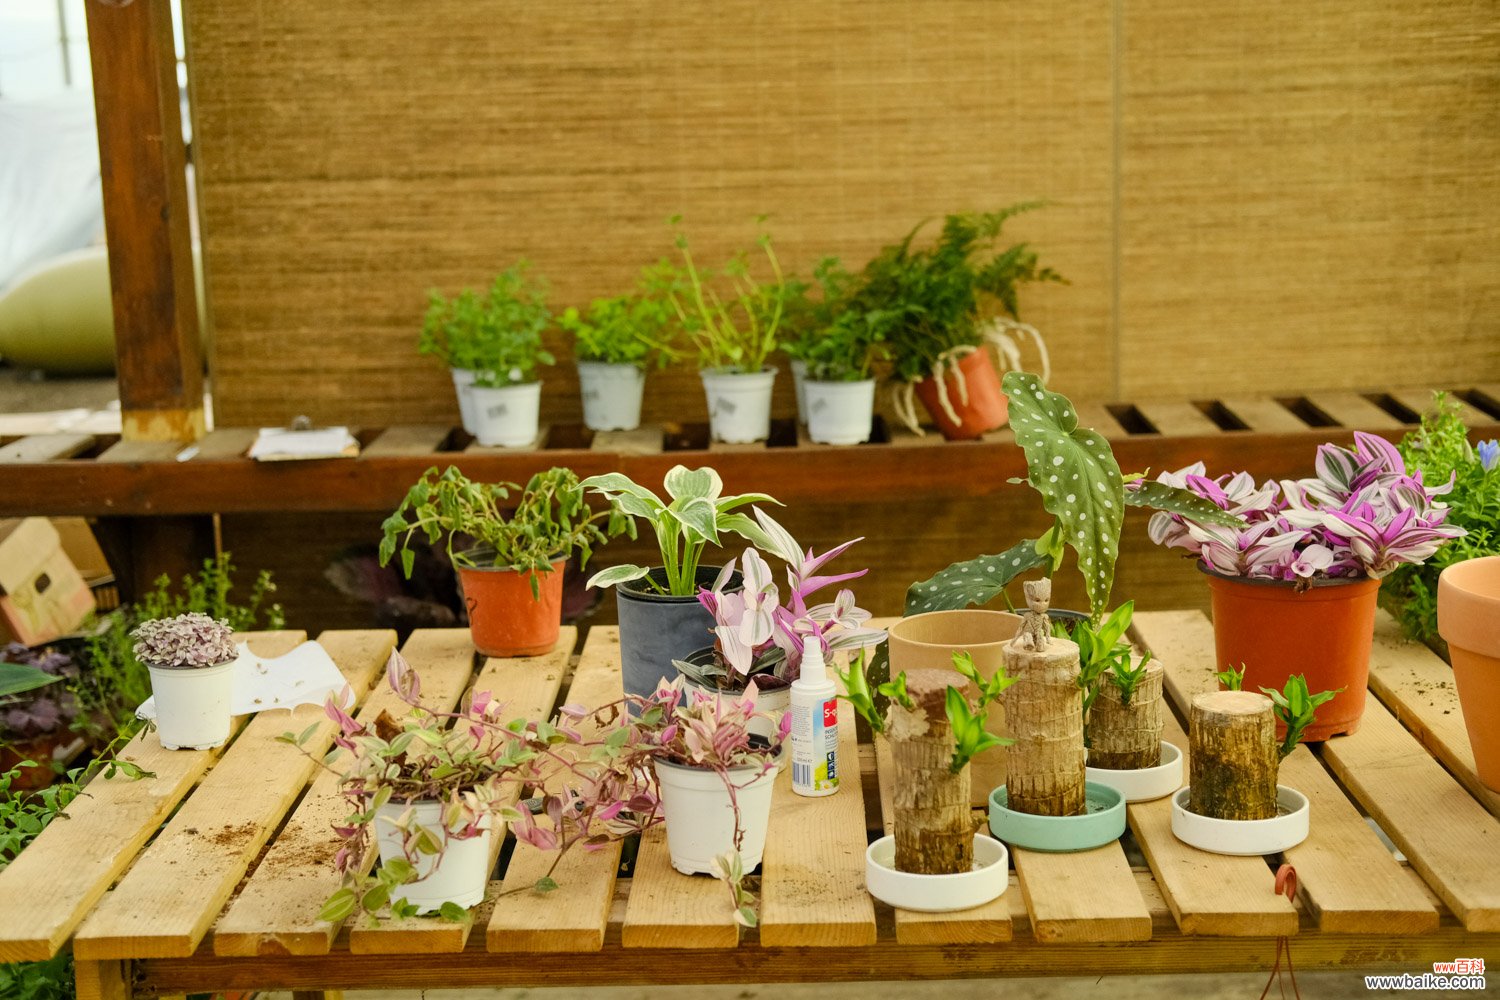 紫背竹芋的养殖方法